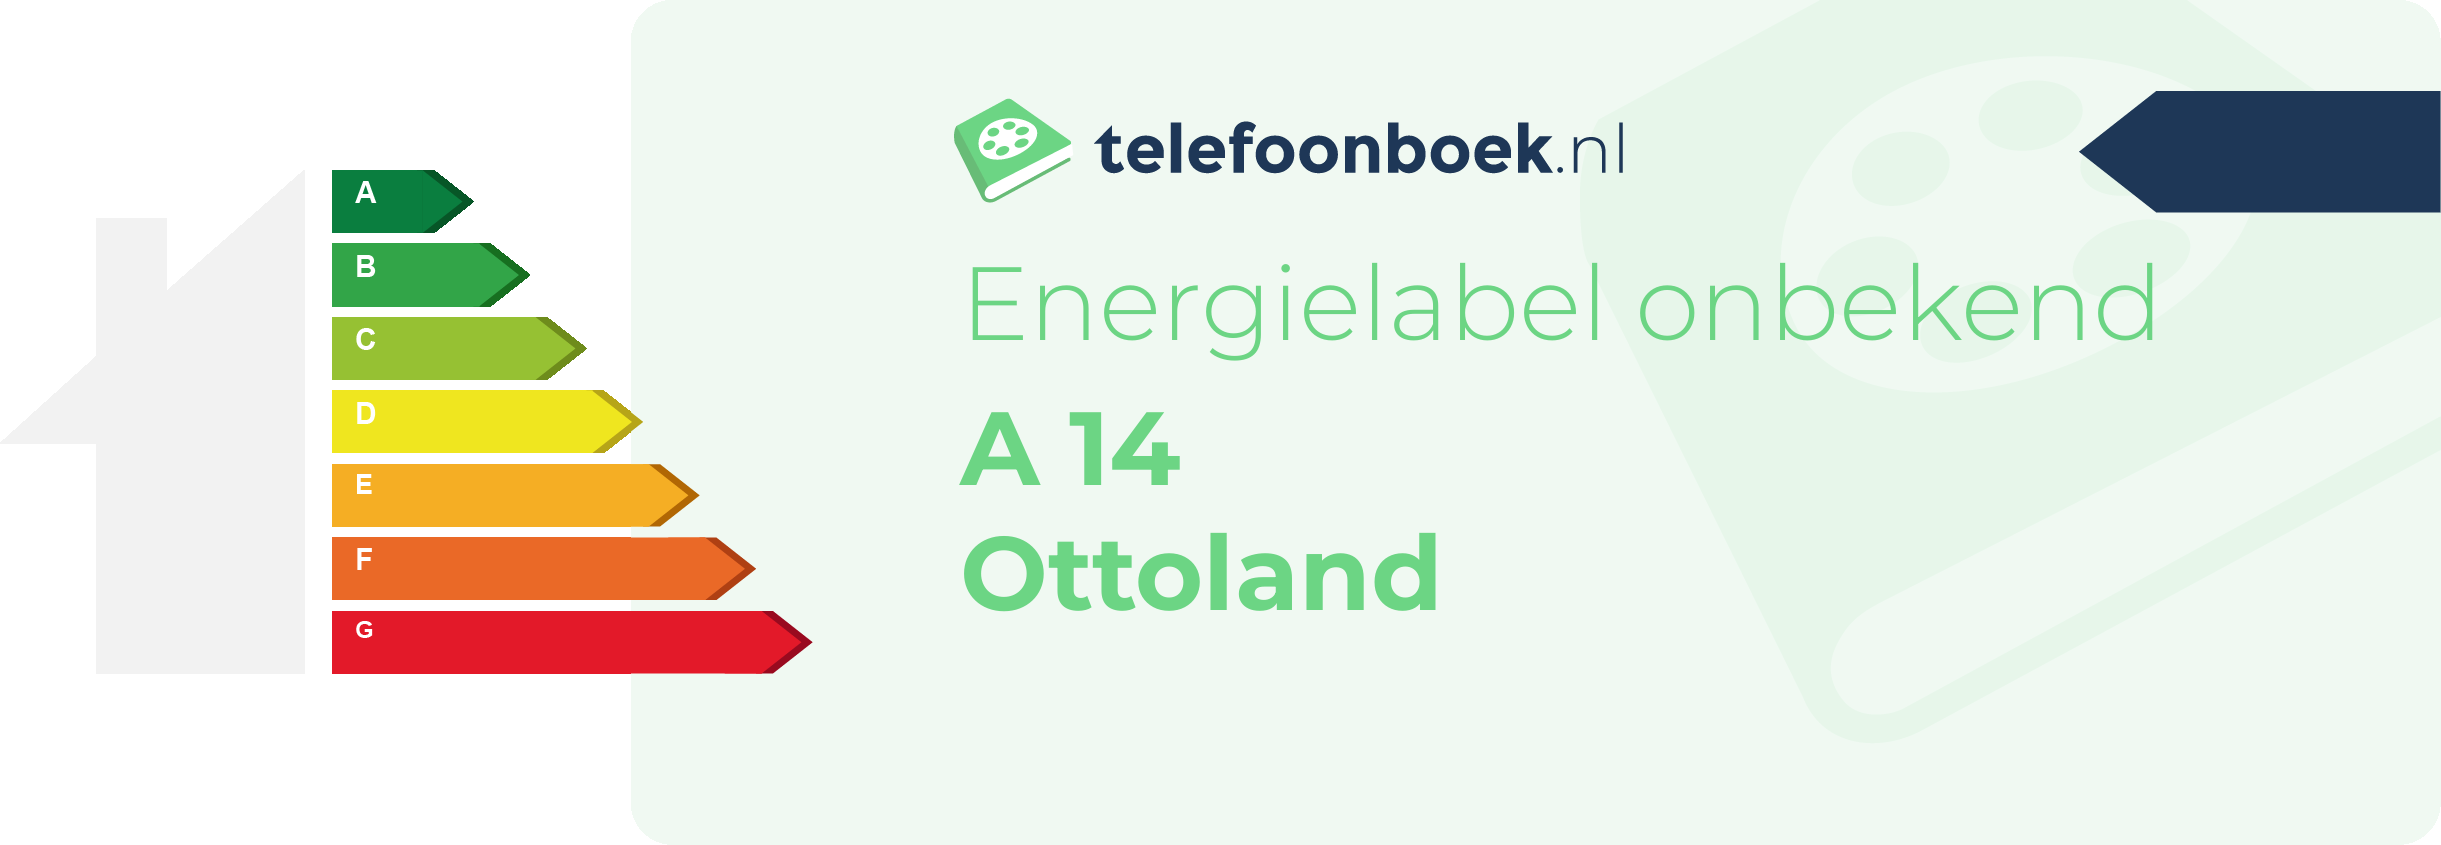 Energielabel A 14 Ottoland